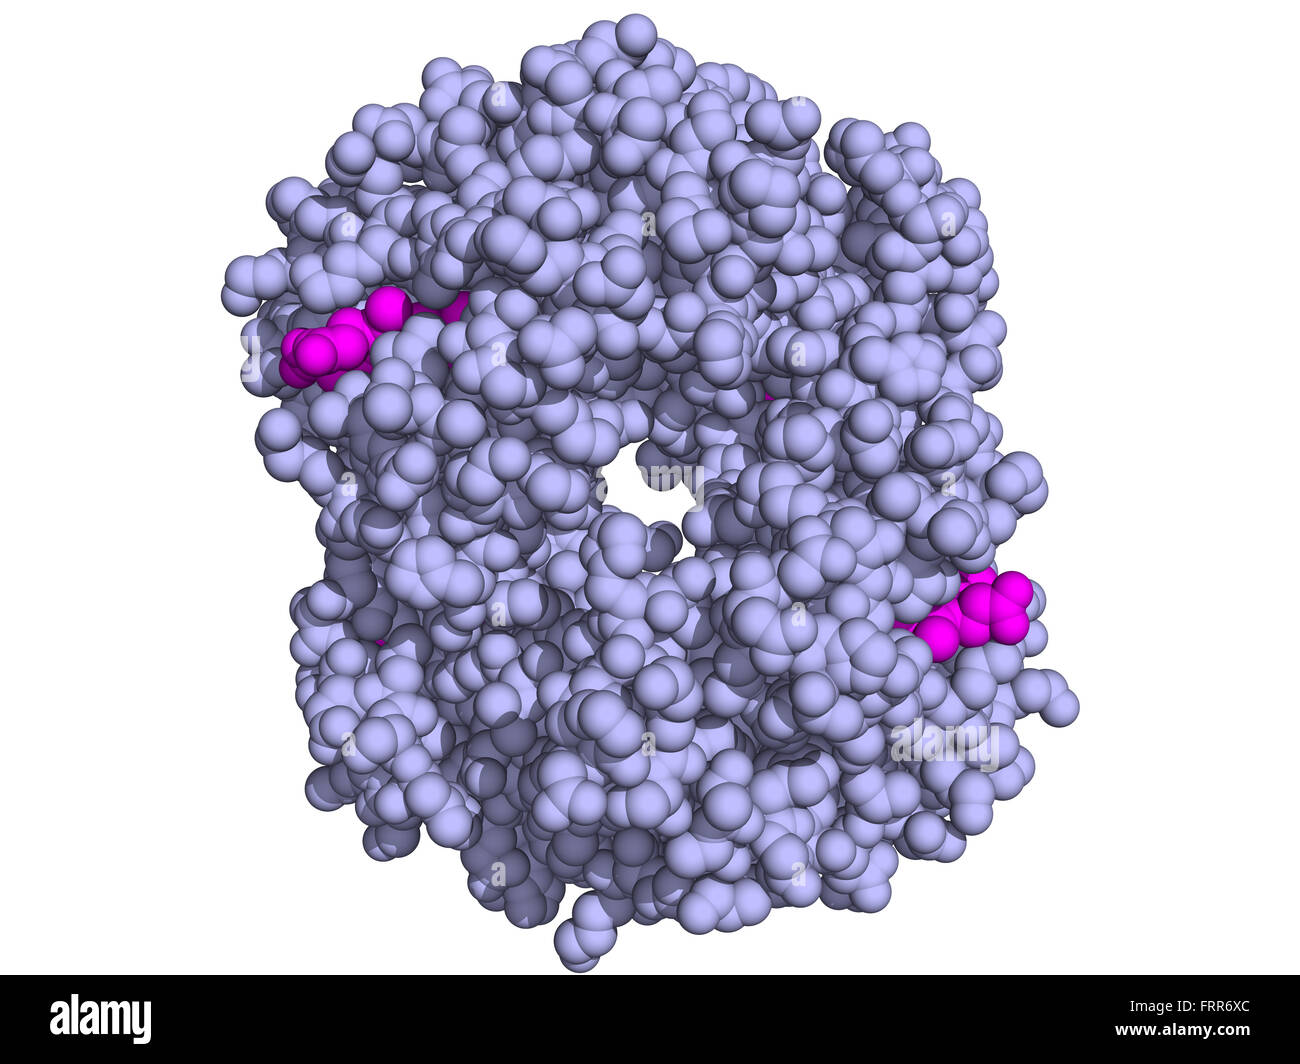 Struttura chimica di emoglobina umana (Hb) molecola di proteina. Ferro-ossigeno contenente proteina di trasporto che si trova nelle cellule rosse del sangue. Foto Stock